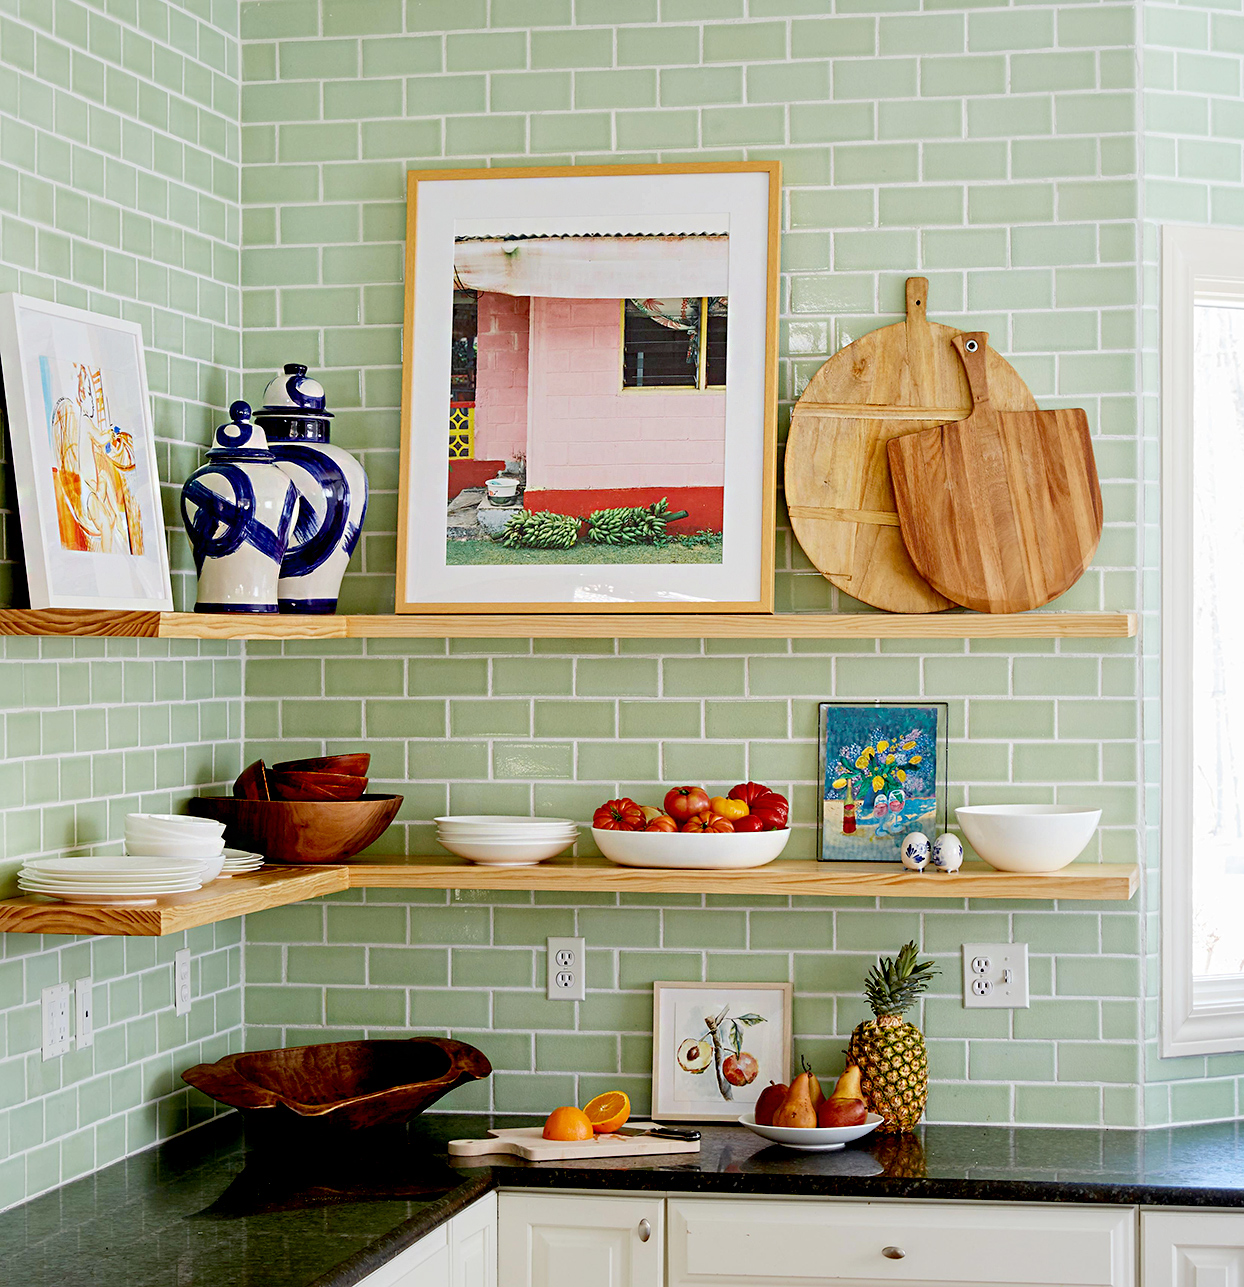 Những bức tranh nhỏ xinh là lựa chọn hoàn hảo để cung cấp điểm nhấn cho phòng bếp.